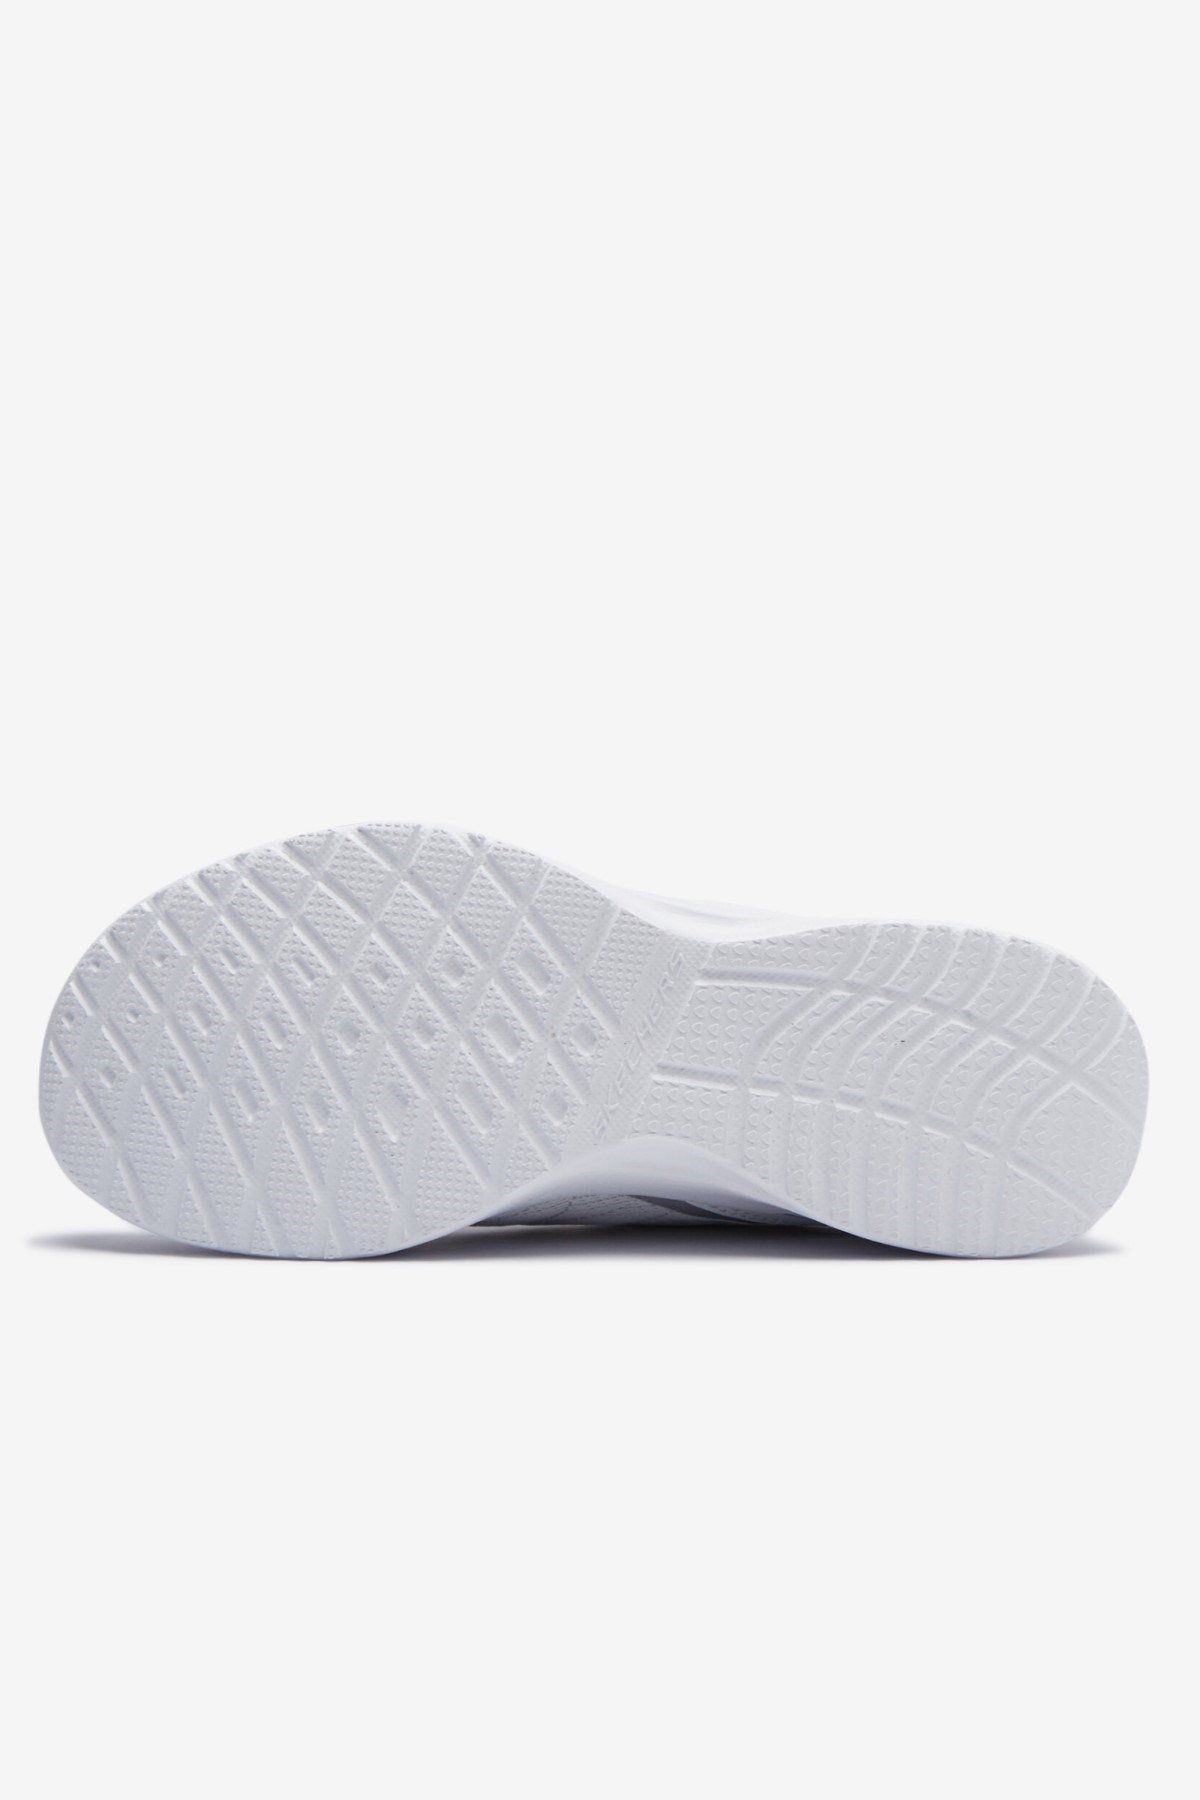 Skechers Kadın Ayakkabı 149660 Beyaz/Gümüş